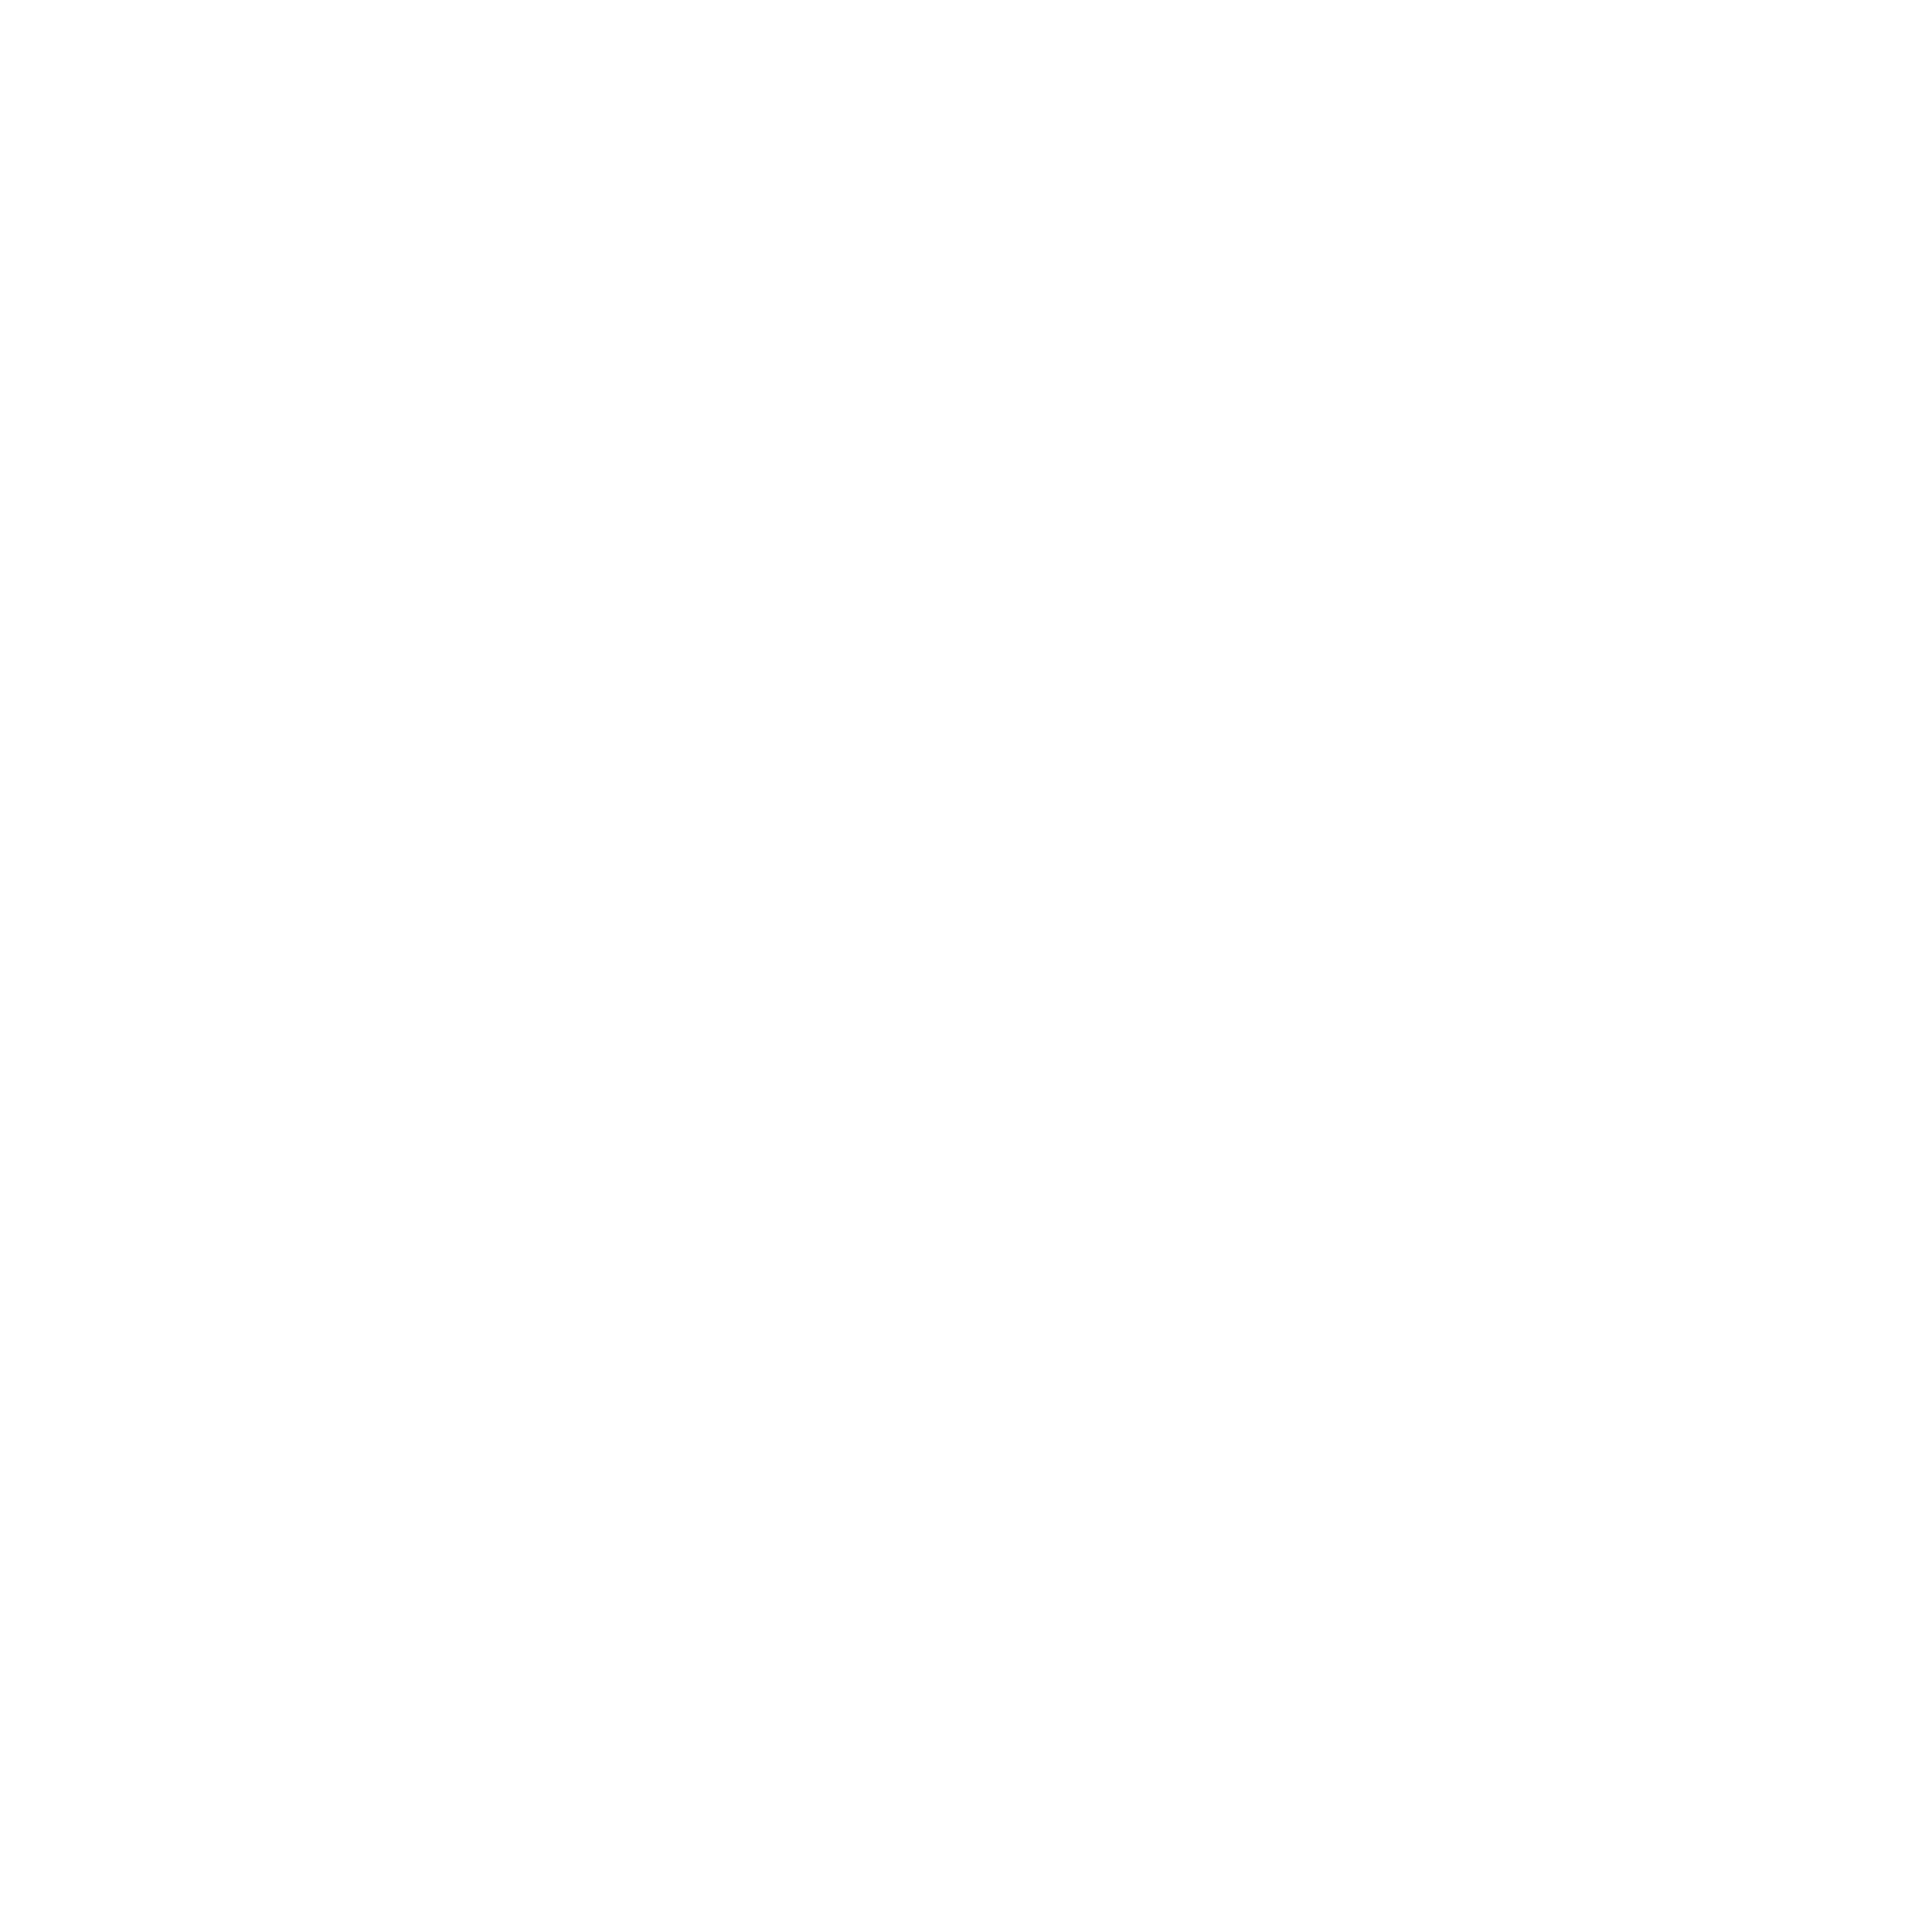 Murray Hill Neighborhood Association